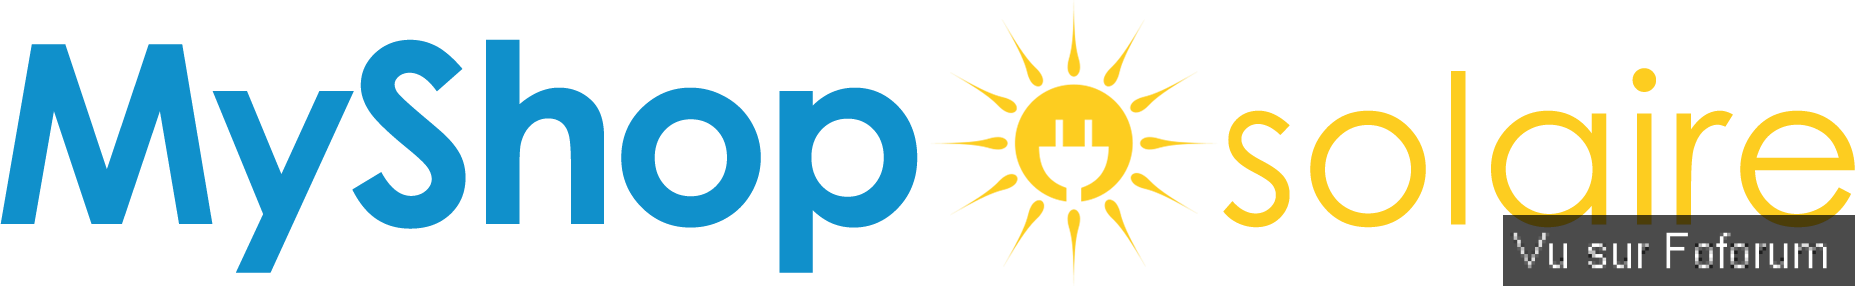 logo-myshop-solaire.png